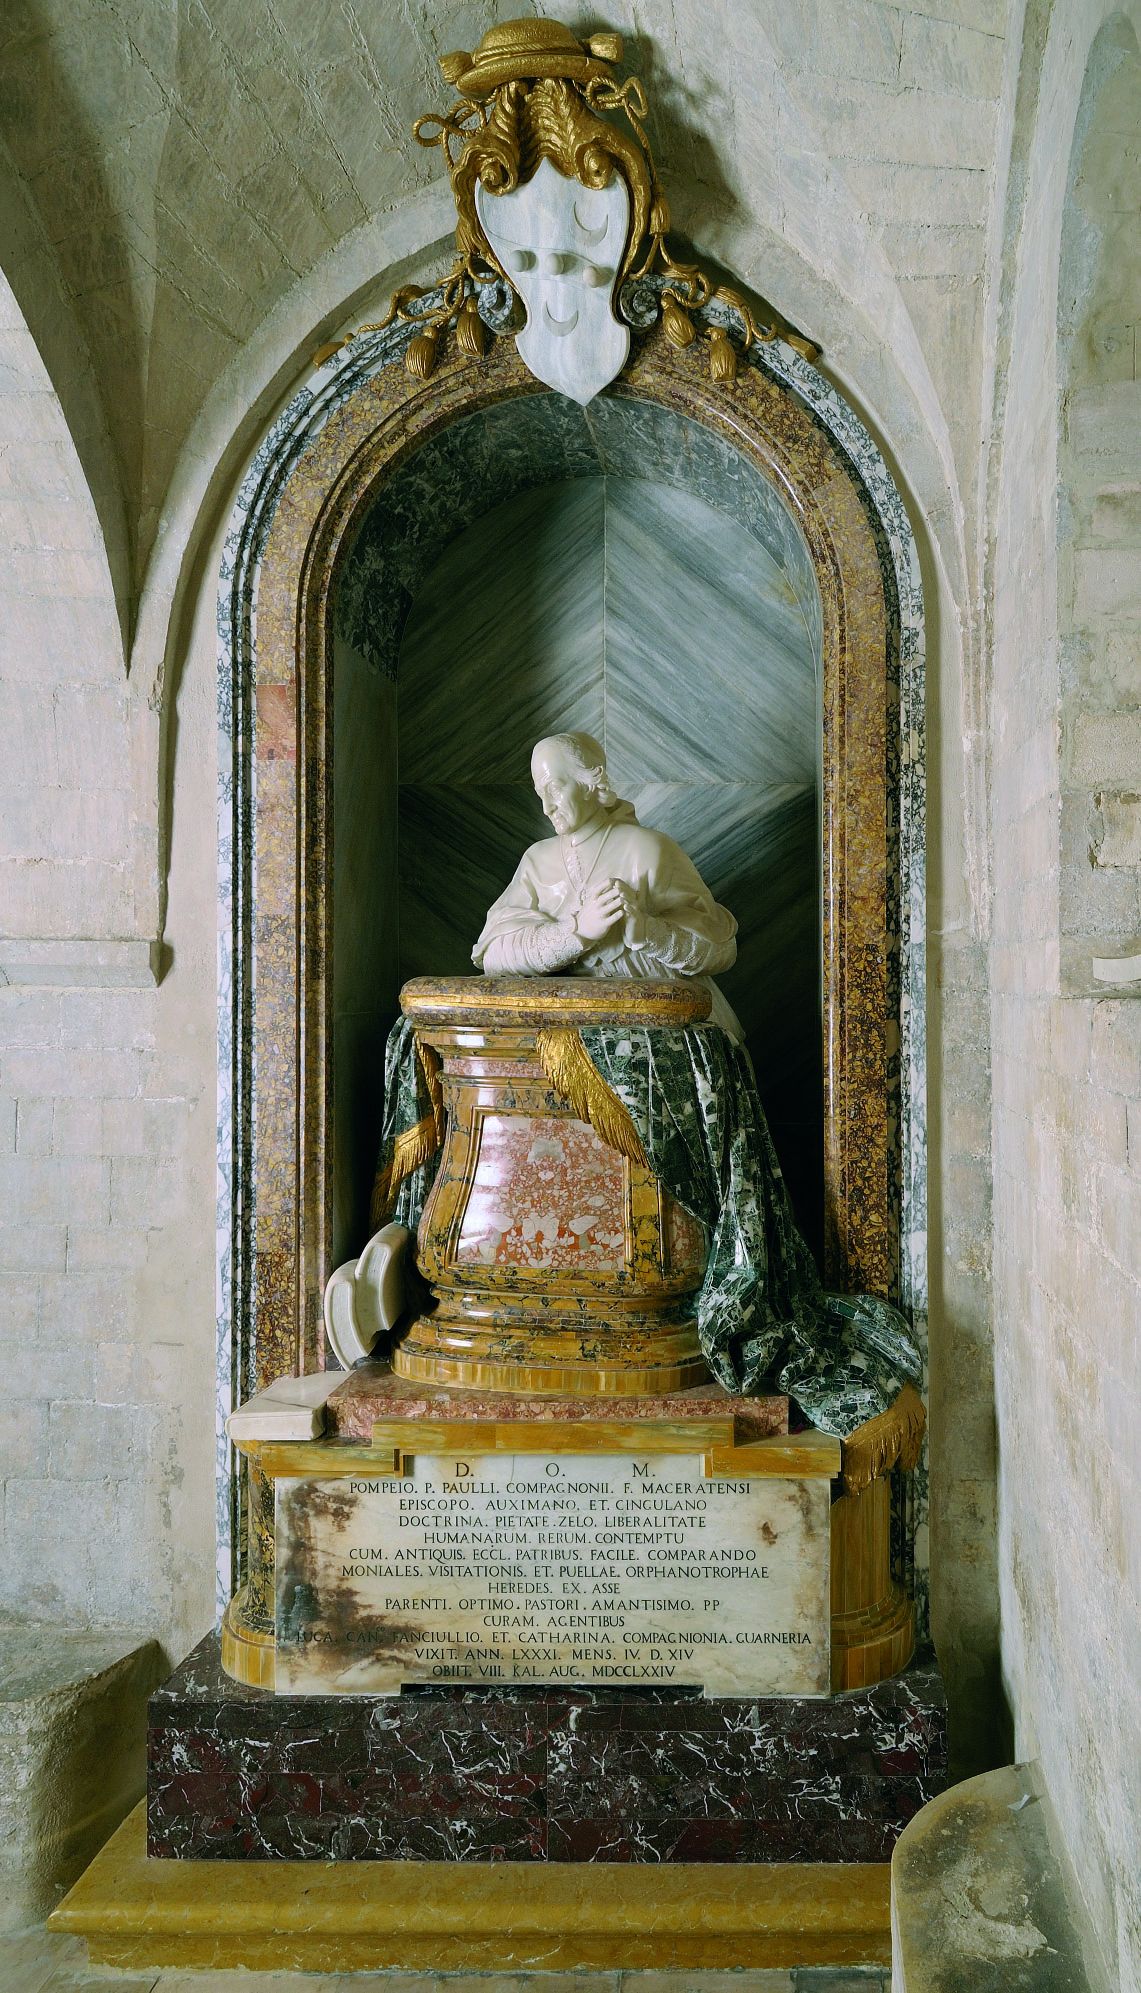   Monumento al cardinale Pompeo Compagnoni, cripta del Duomo, Osimo (AN